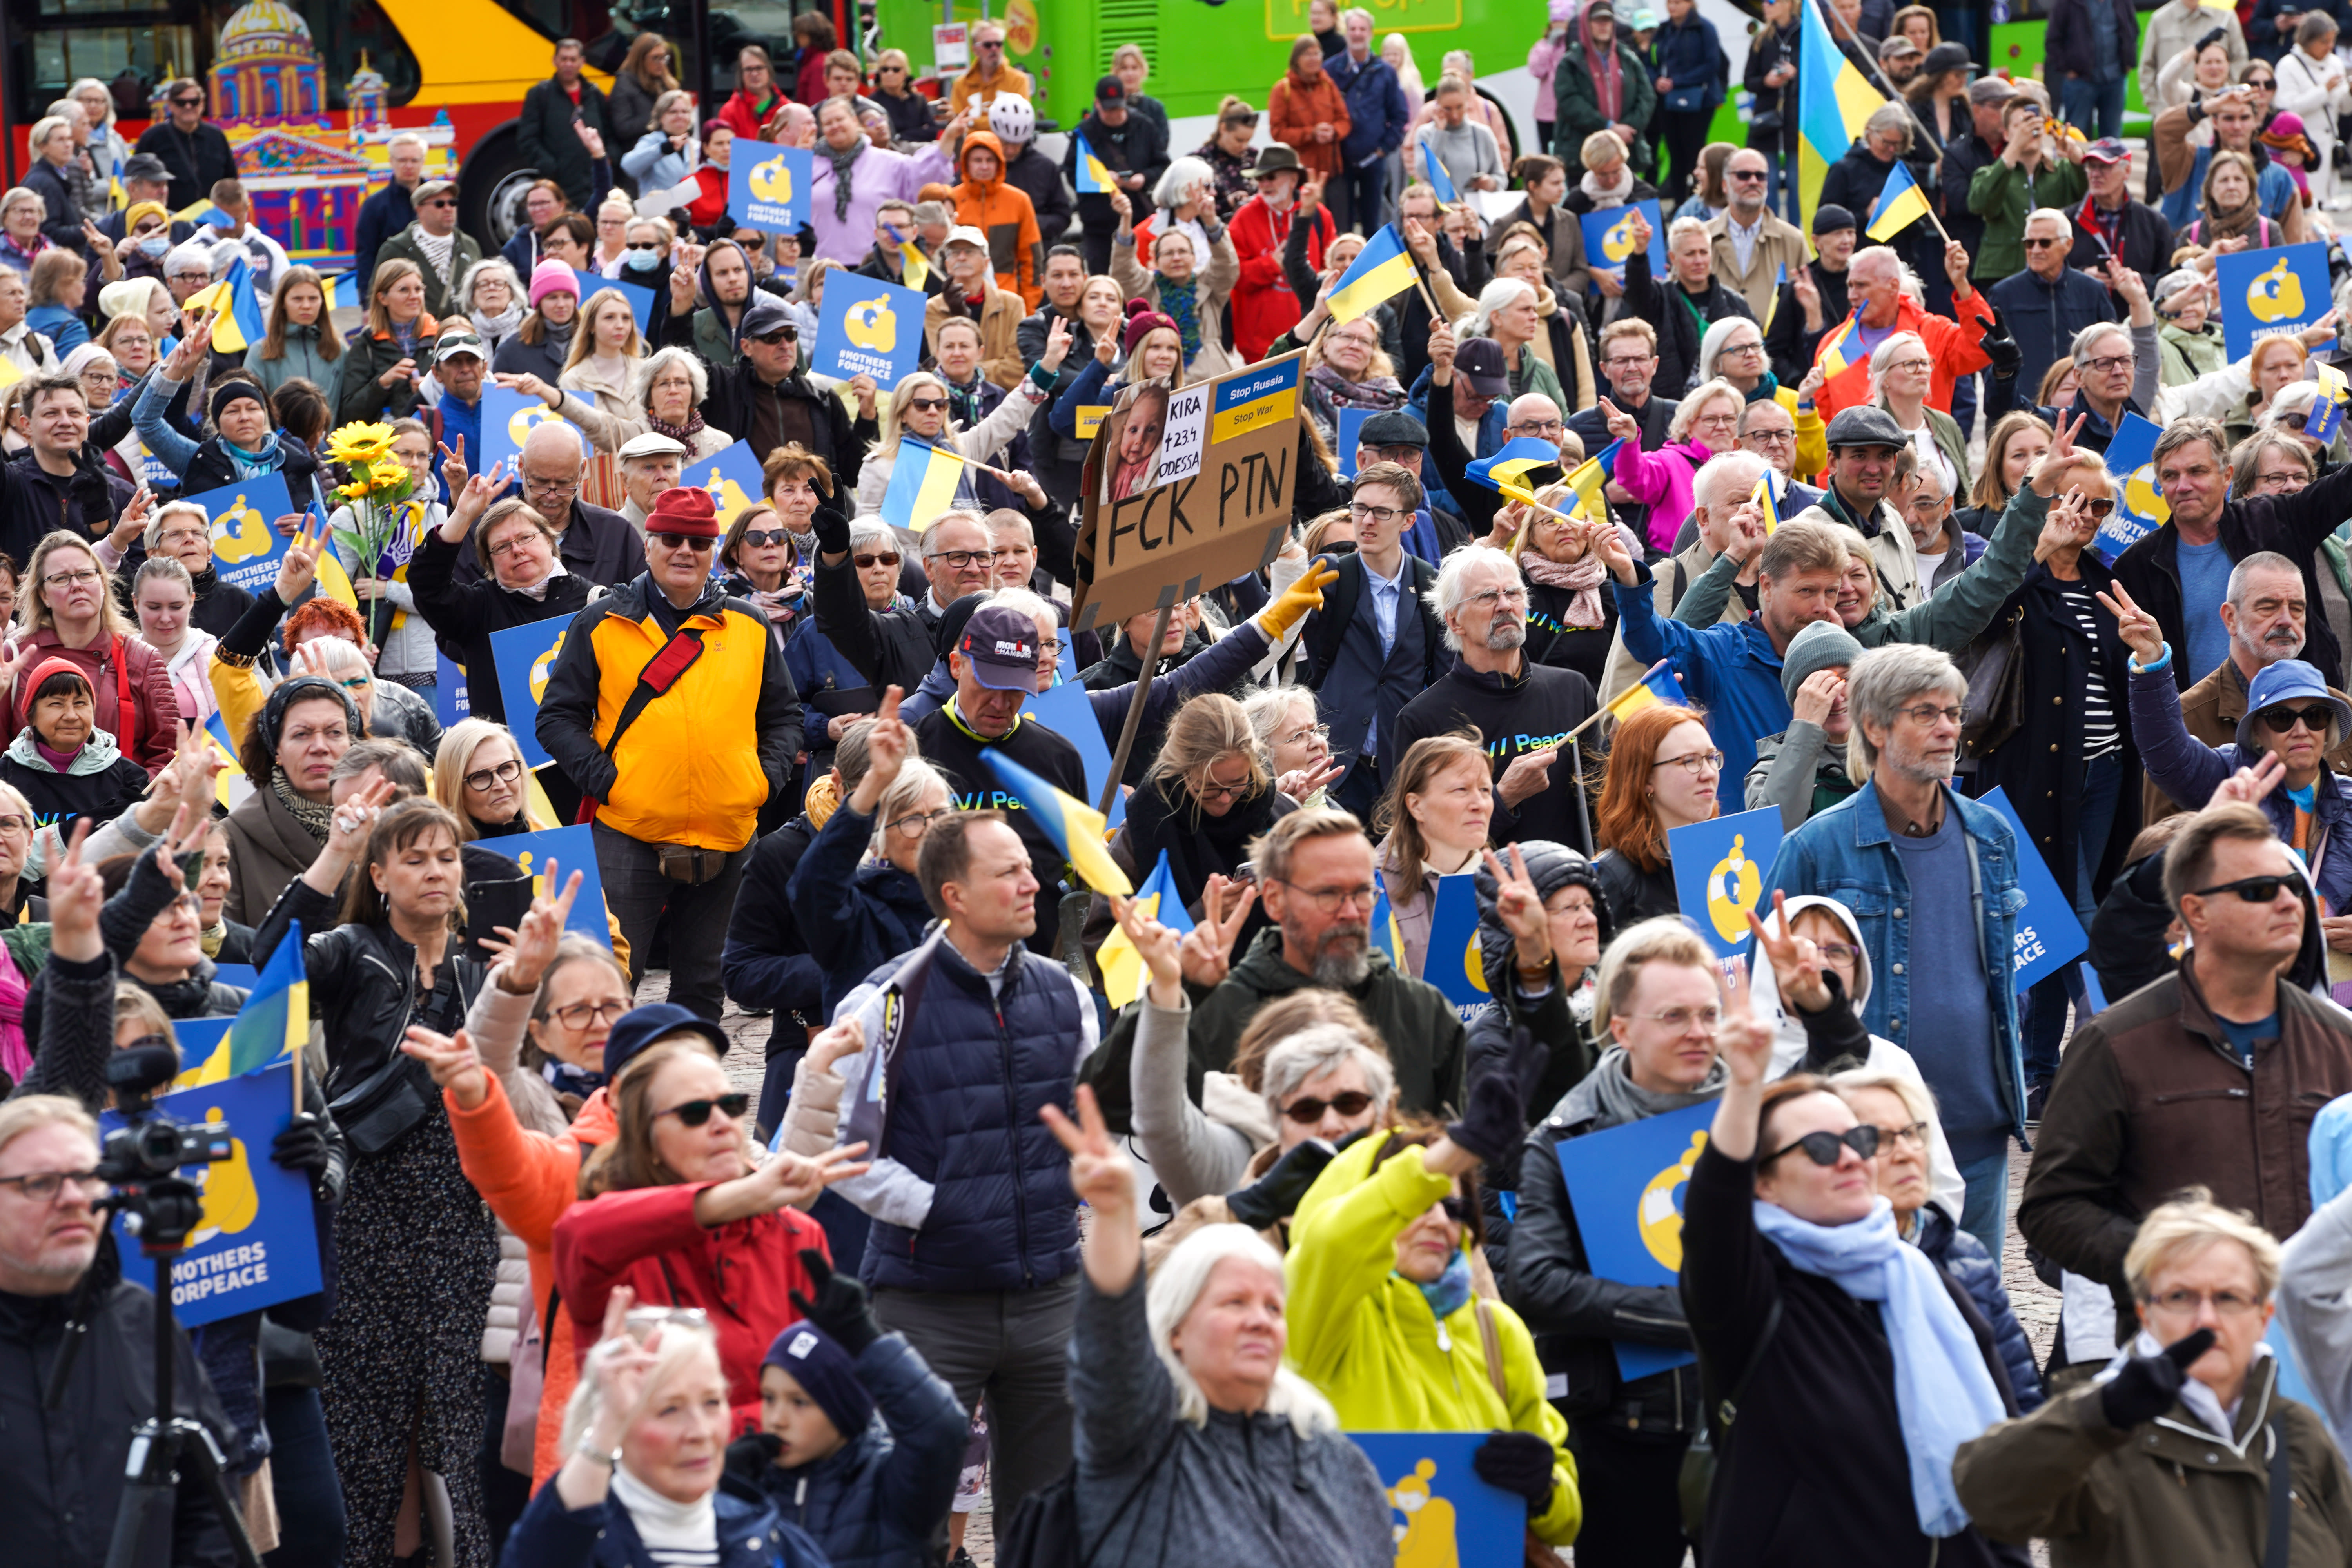 A large pro-Ukraine demonstration is organized in Helsinki